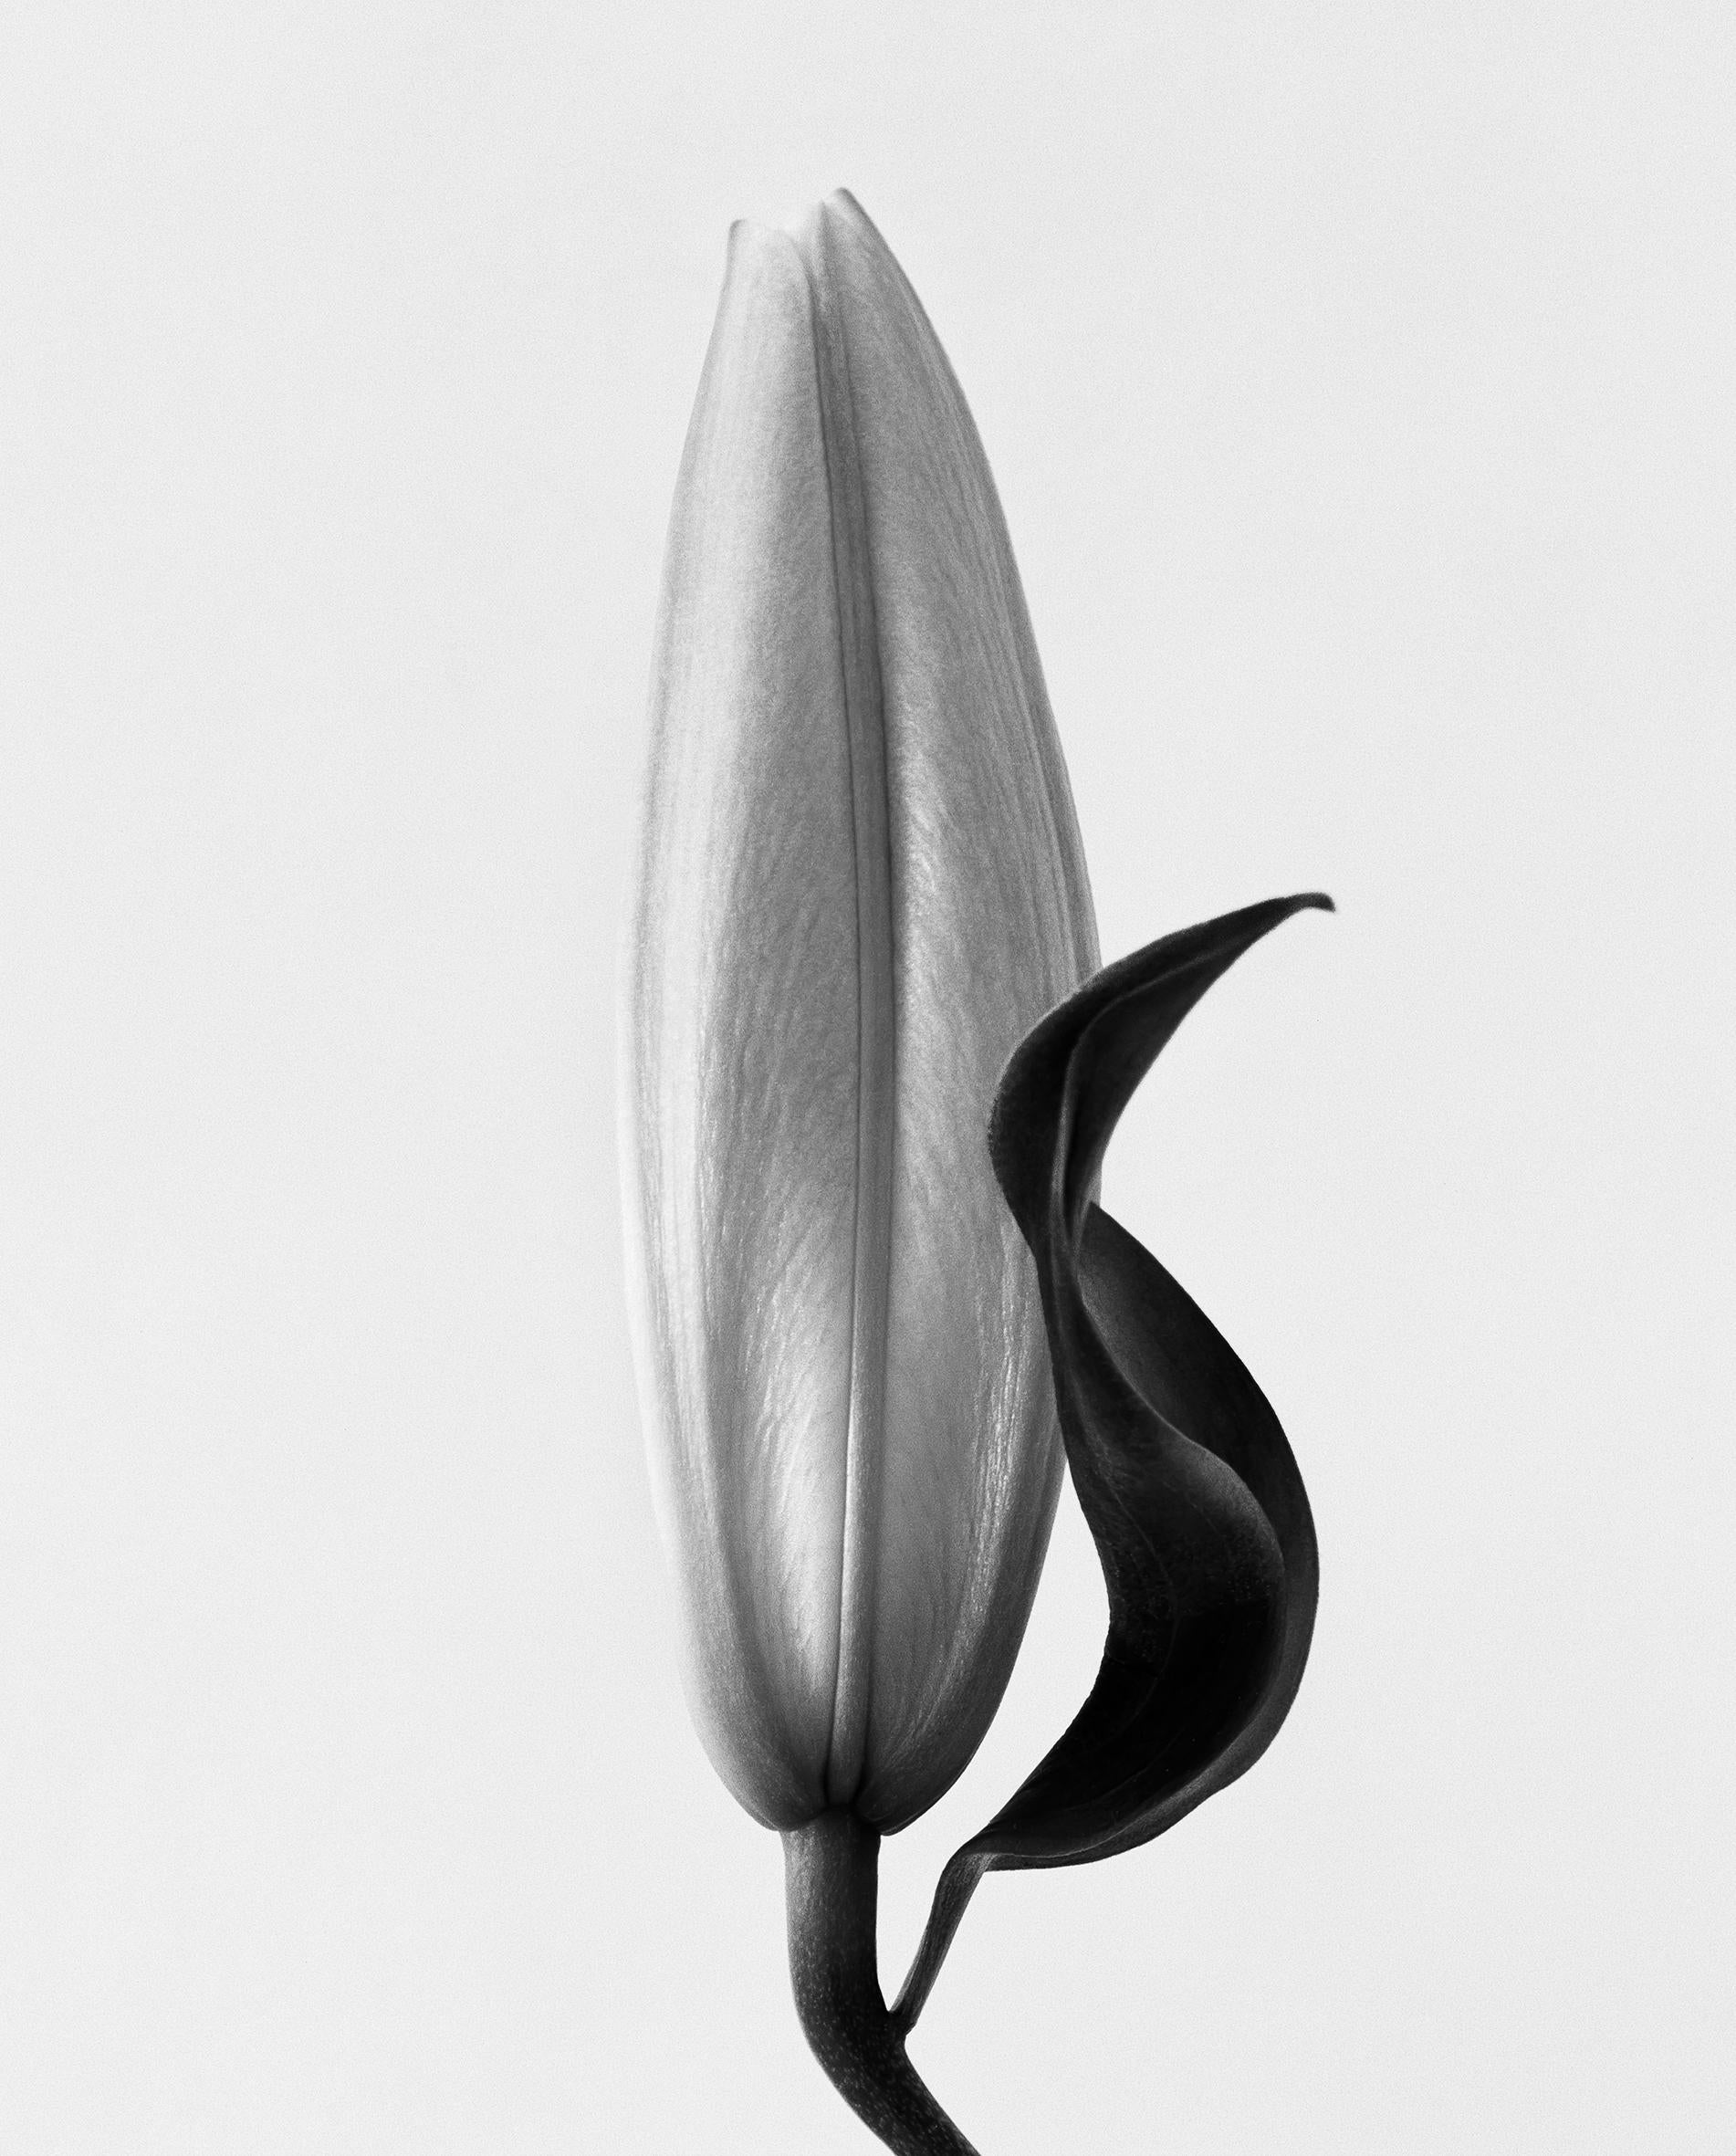 Ugne Pouwell Black and White Photograph – Lily No.2 Schwarz-Weiß- analoge Blumenfotografie, Auflage von 15 Stück